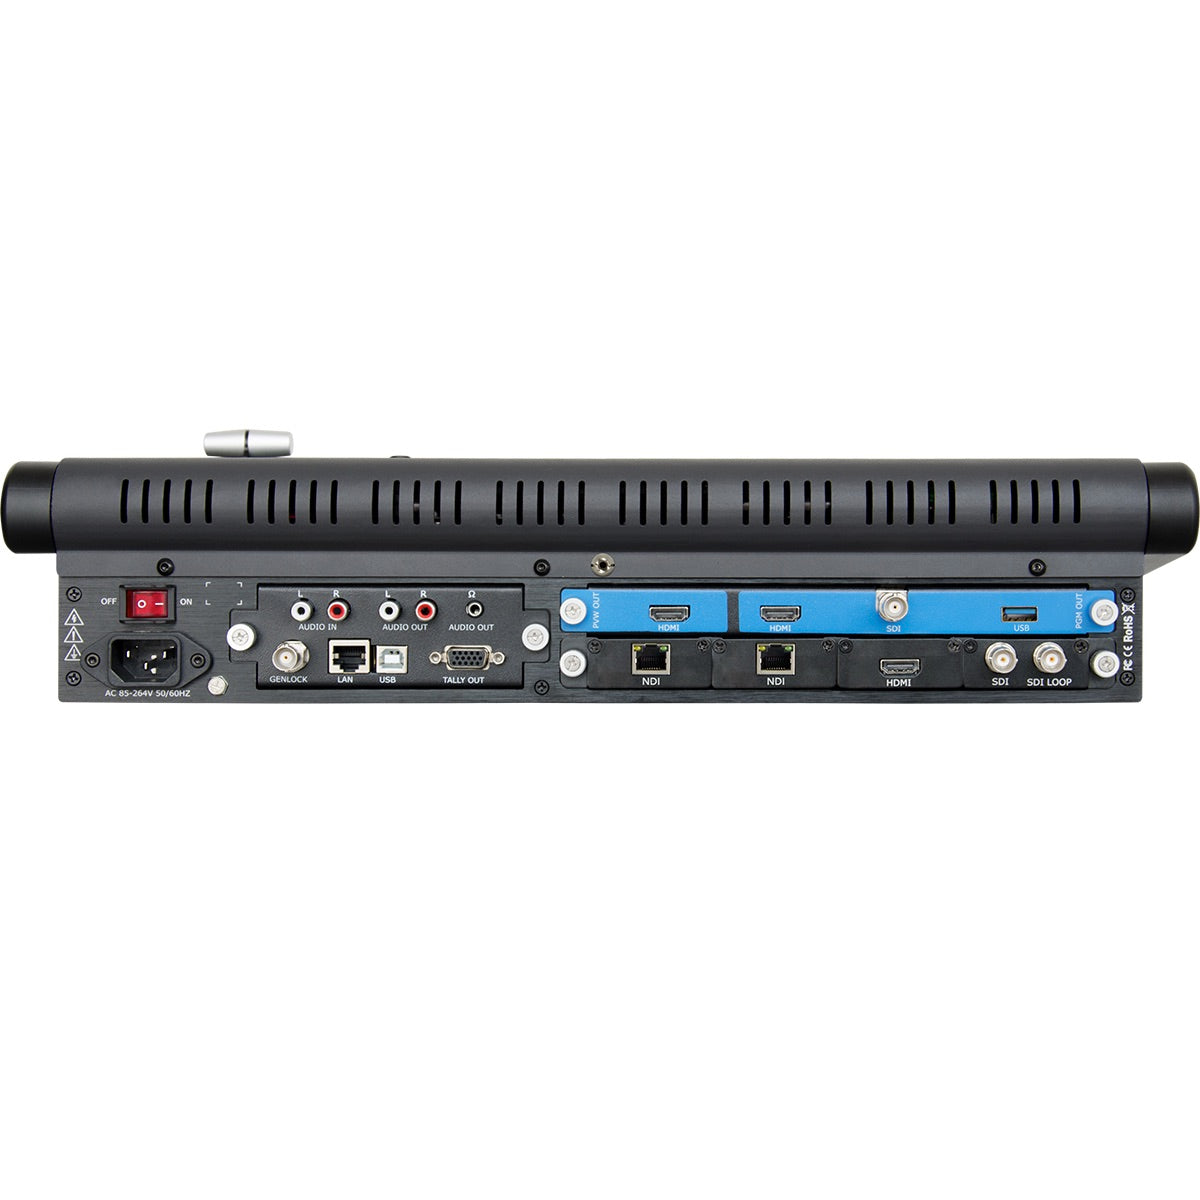 RGBlink M1 - Modular NDI Production Video Switcher, rear